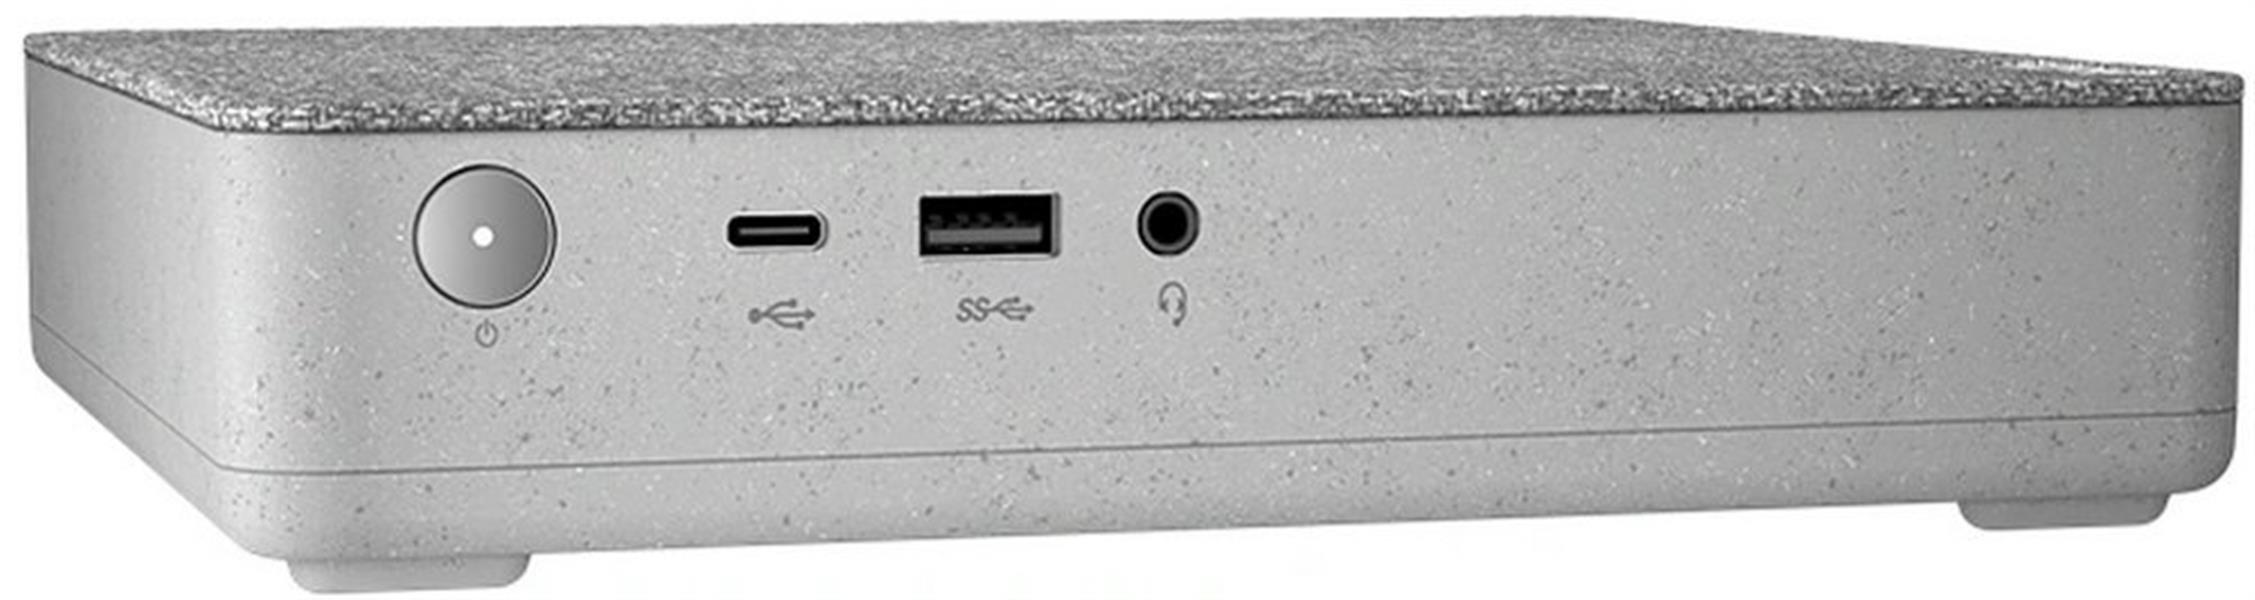 Lenovo IdeaCentre Mini 5 / i7-10700T / 16GB / 512GB / W10P